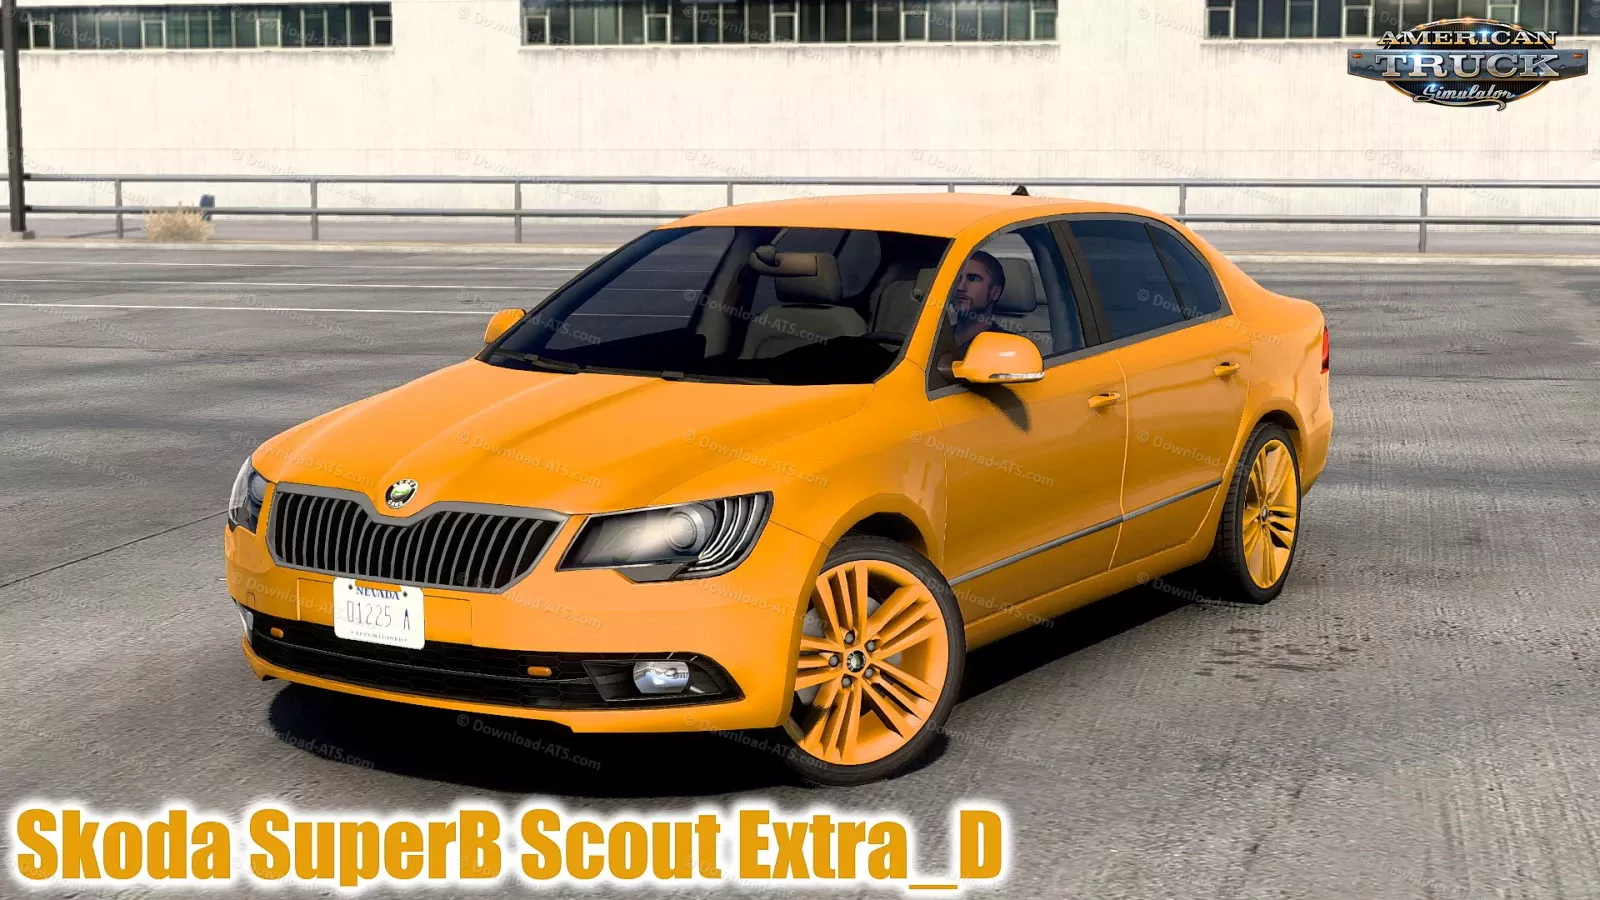 Skoda SuperB Scout ExtraD 2013 v1.4 (1.50.x) for ATS